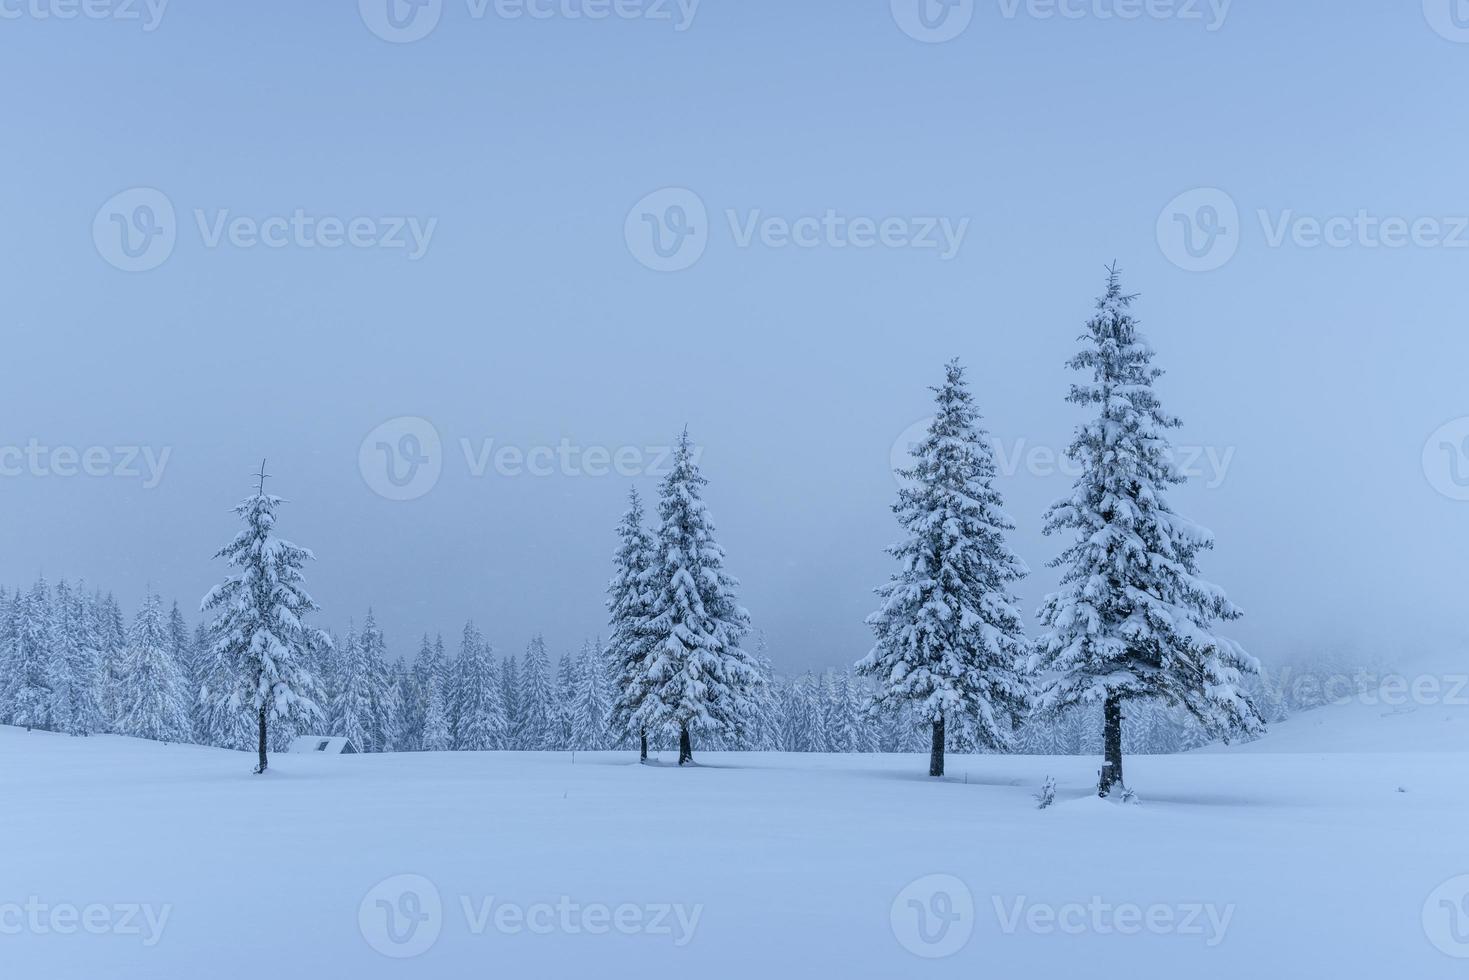 en lugn vinterscen. granar täckta med snö står i en dimma. vacker natur i utkanten av skogen. gott nytt år foto